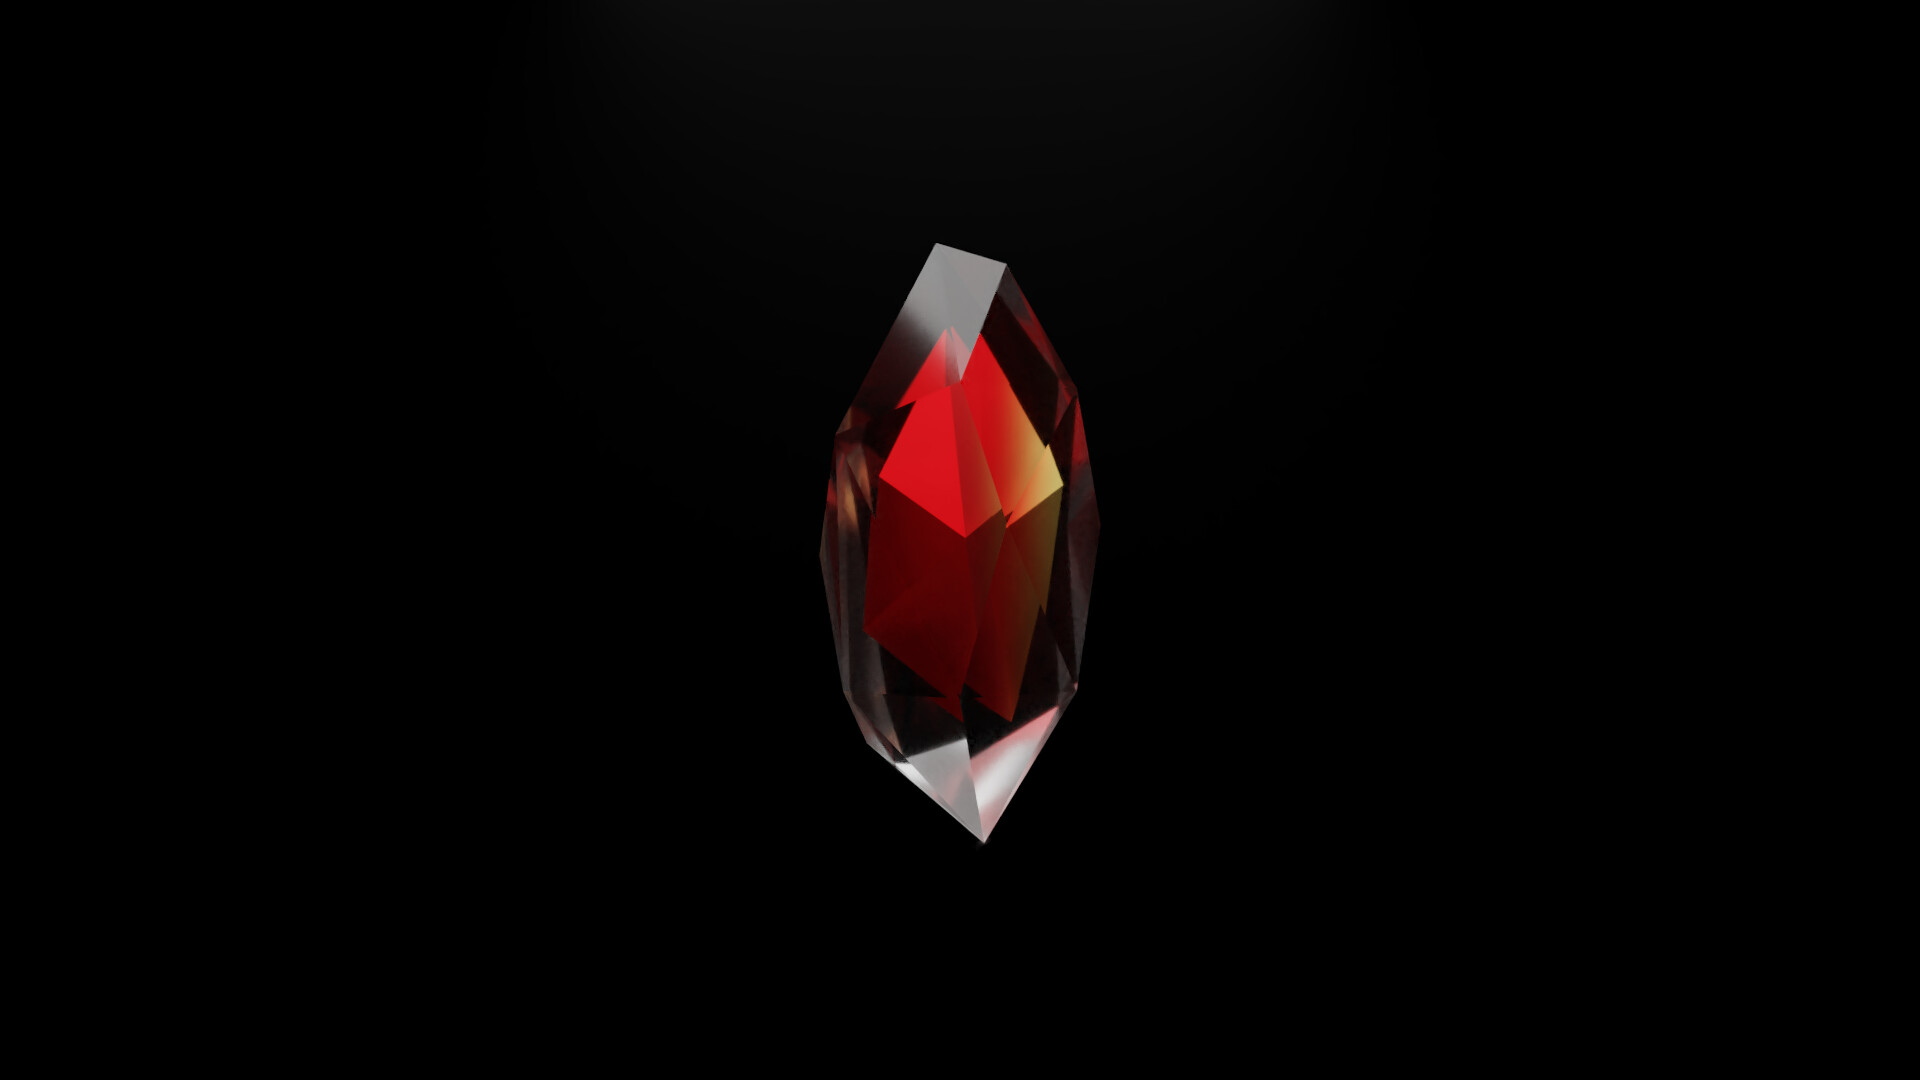 ArtStation - Fire Crystal